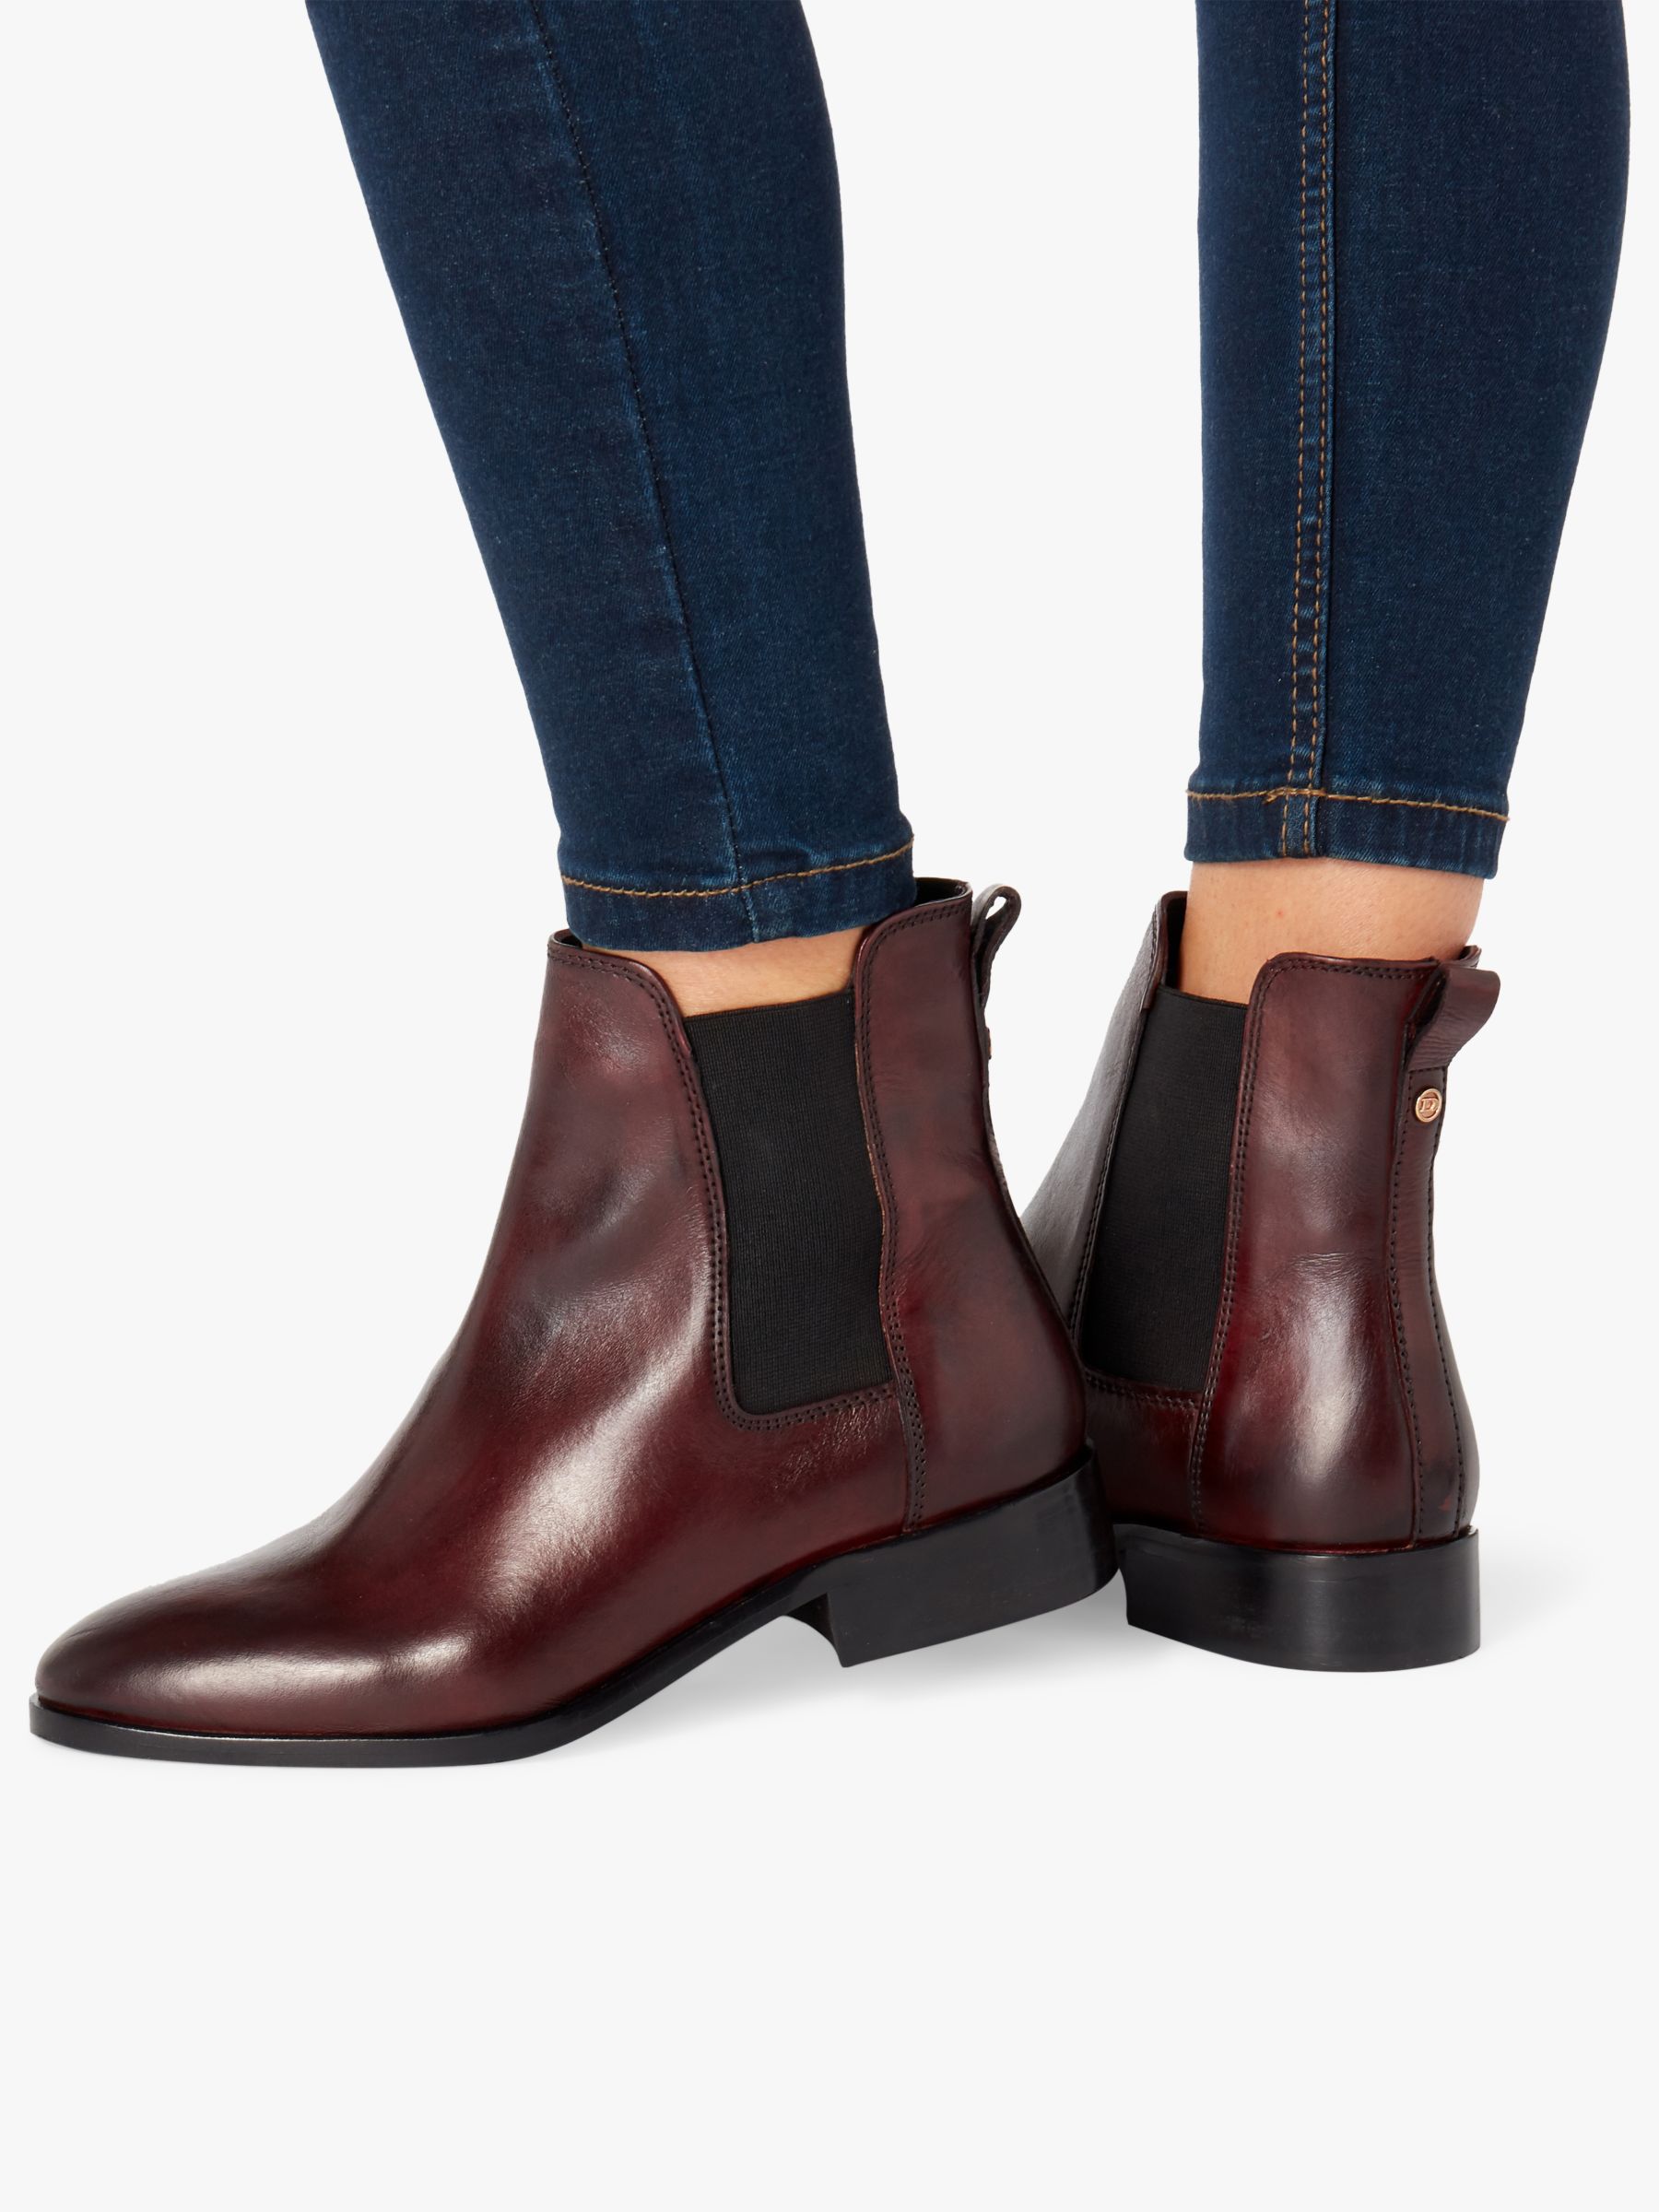 dark chelsea boots